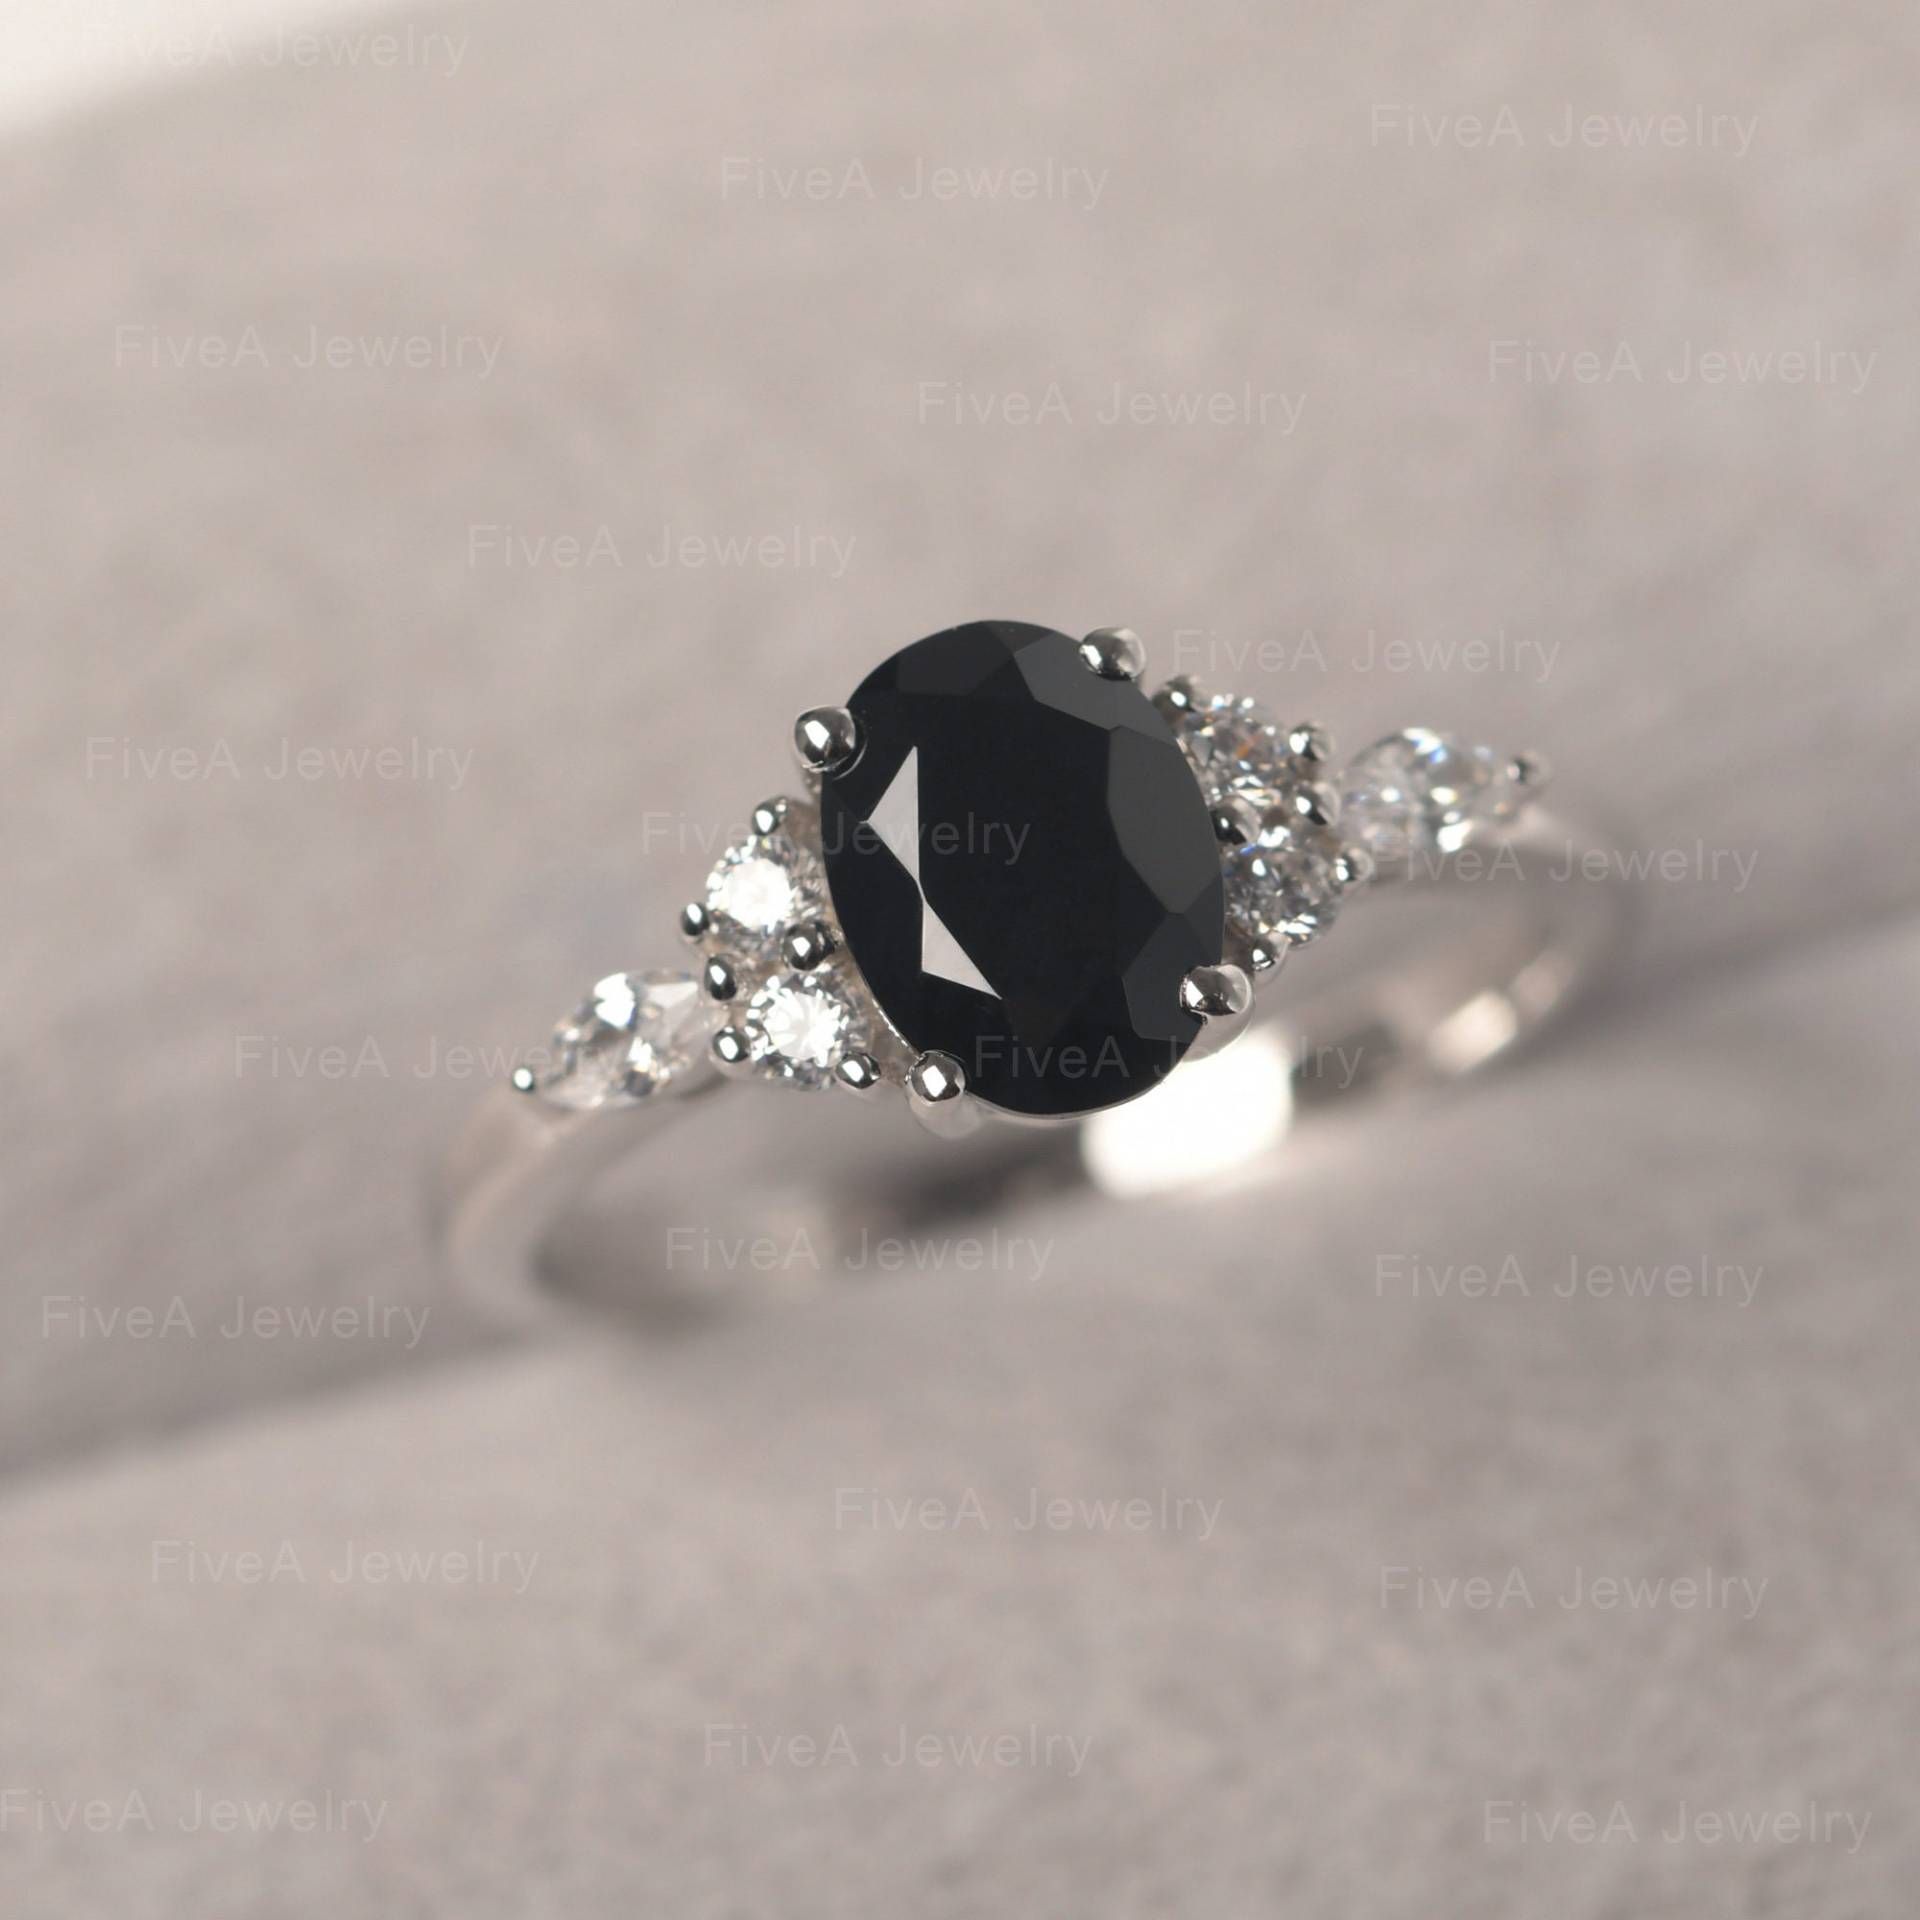 Natürlicher Schwarzer Spinell Ring Oval Cut Cluster Silber Ehering Für Mama von FiveAjewelry